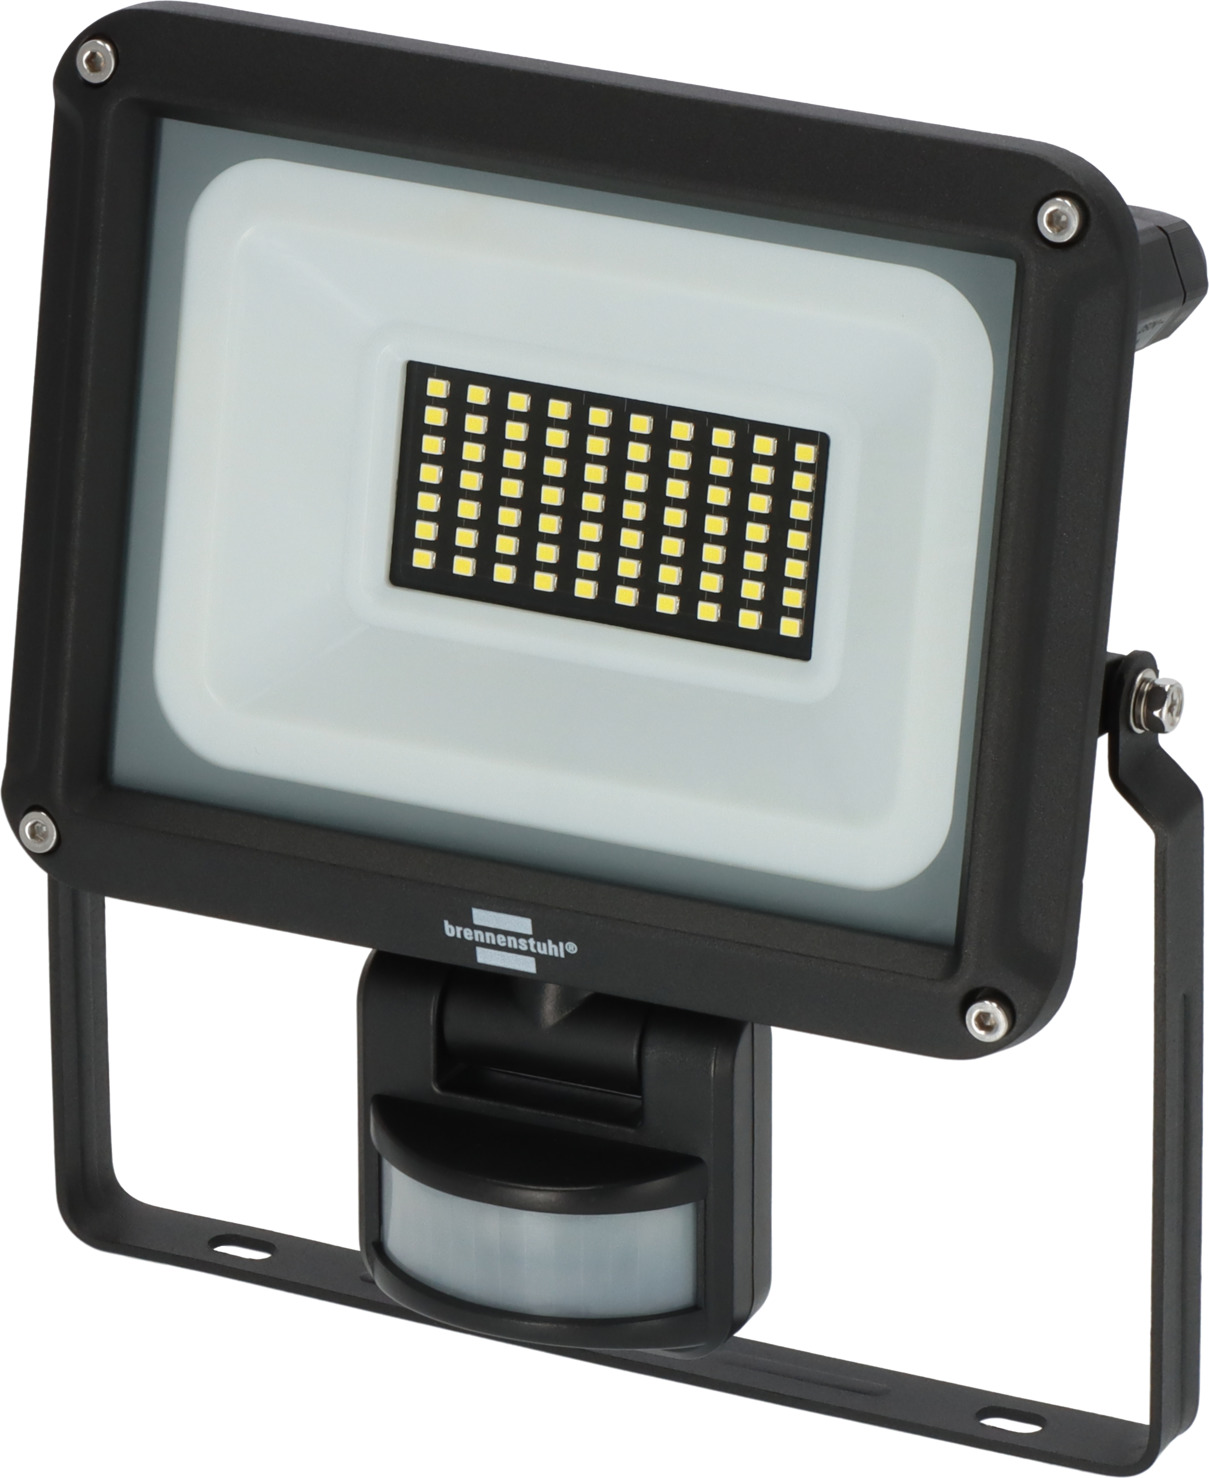 LED Strahler JARO IP65 brennenstuhl® 4060 P | 3450lm, 30W, mit Infrarot-Bewegungsmelder